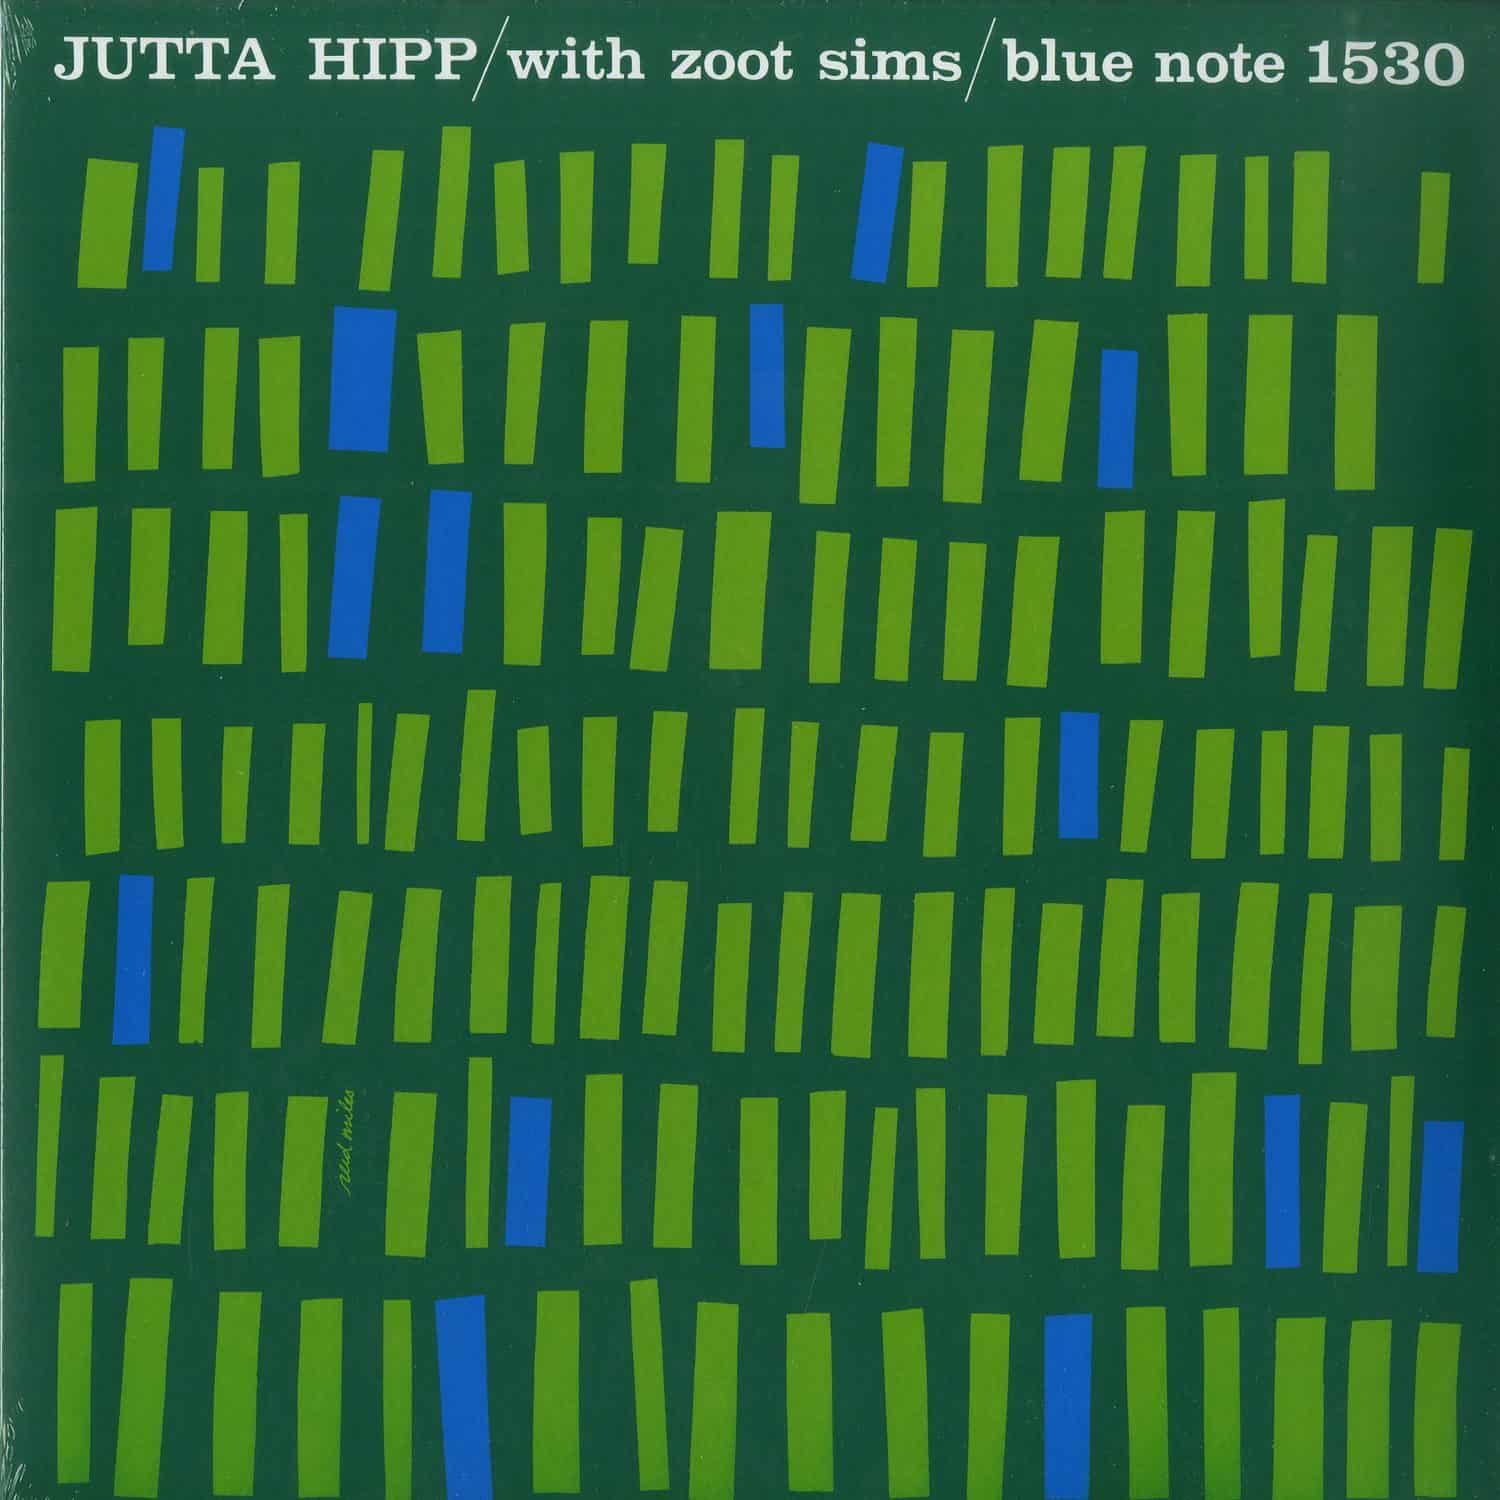 Jutta Hipp & Zoot Sims - JUTTA HIPP WITH ZOOT SIMS 